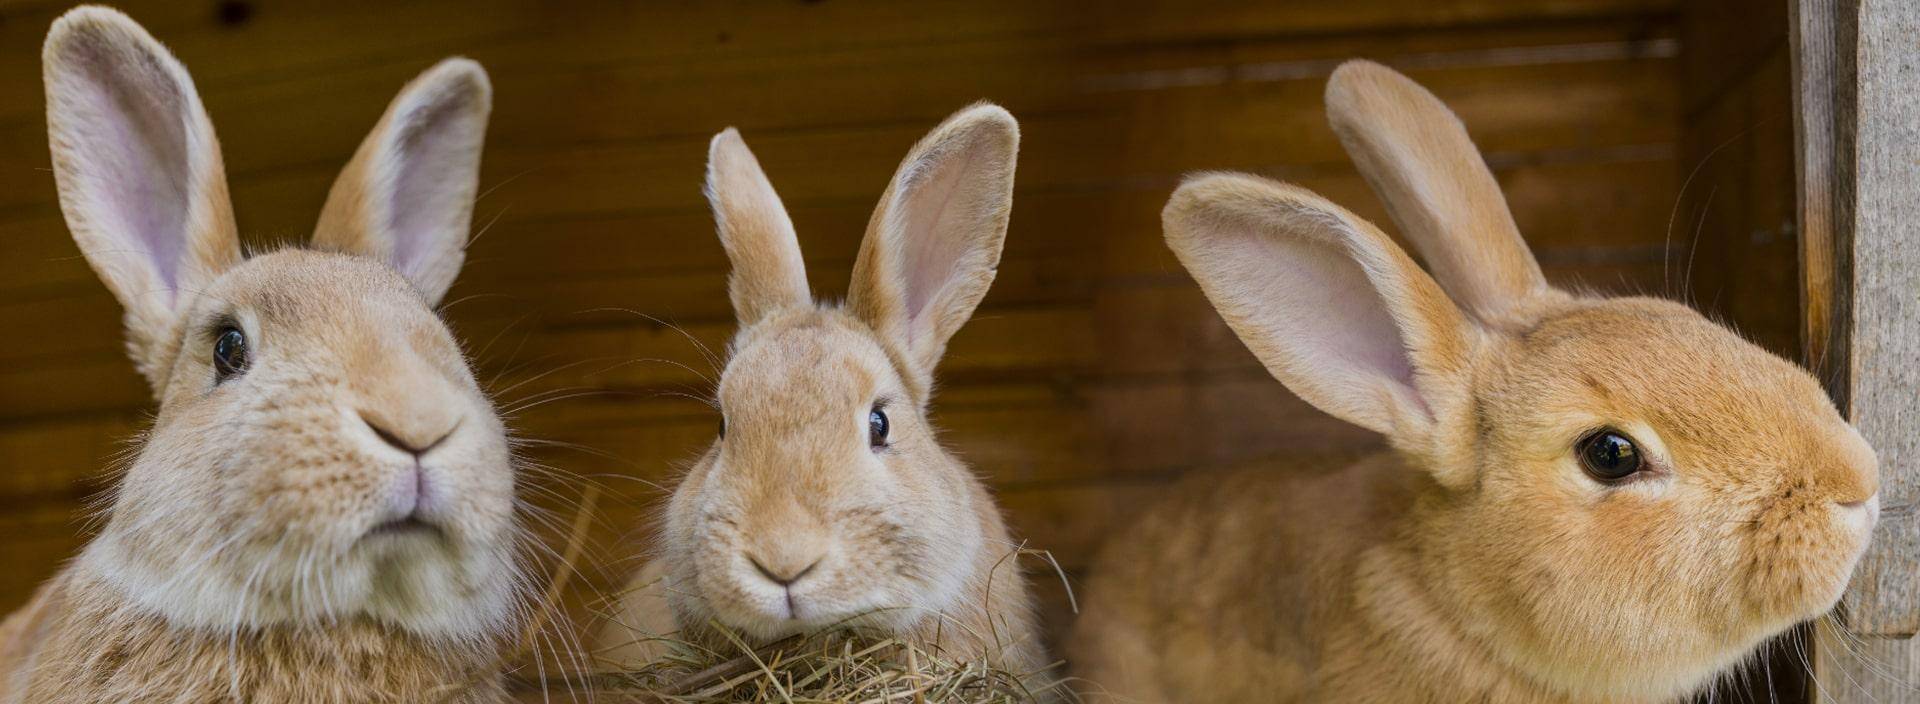 Чем кормить кроликов в домашних условиях: для быстрого набора веса, что можно, что нельзя?